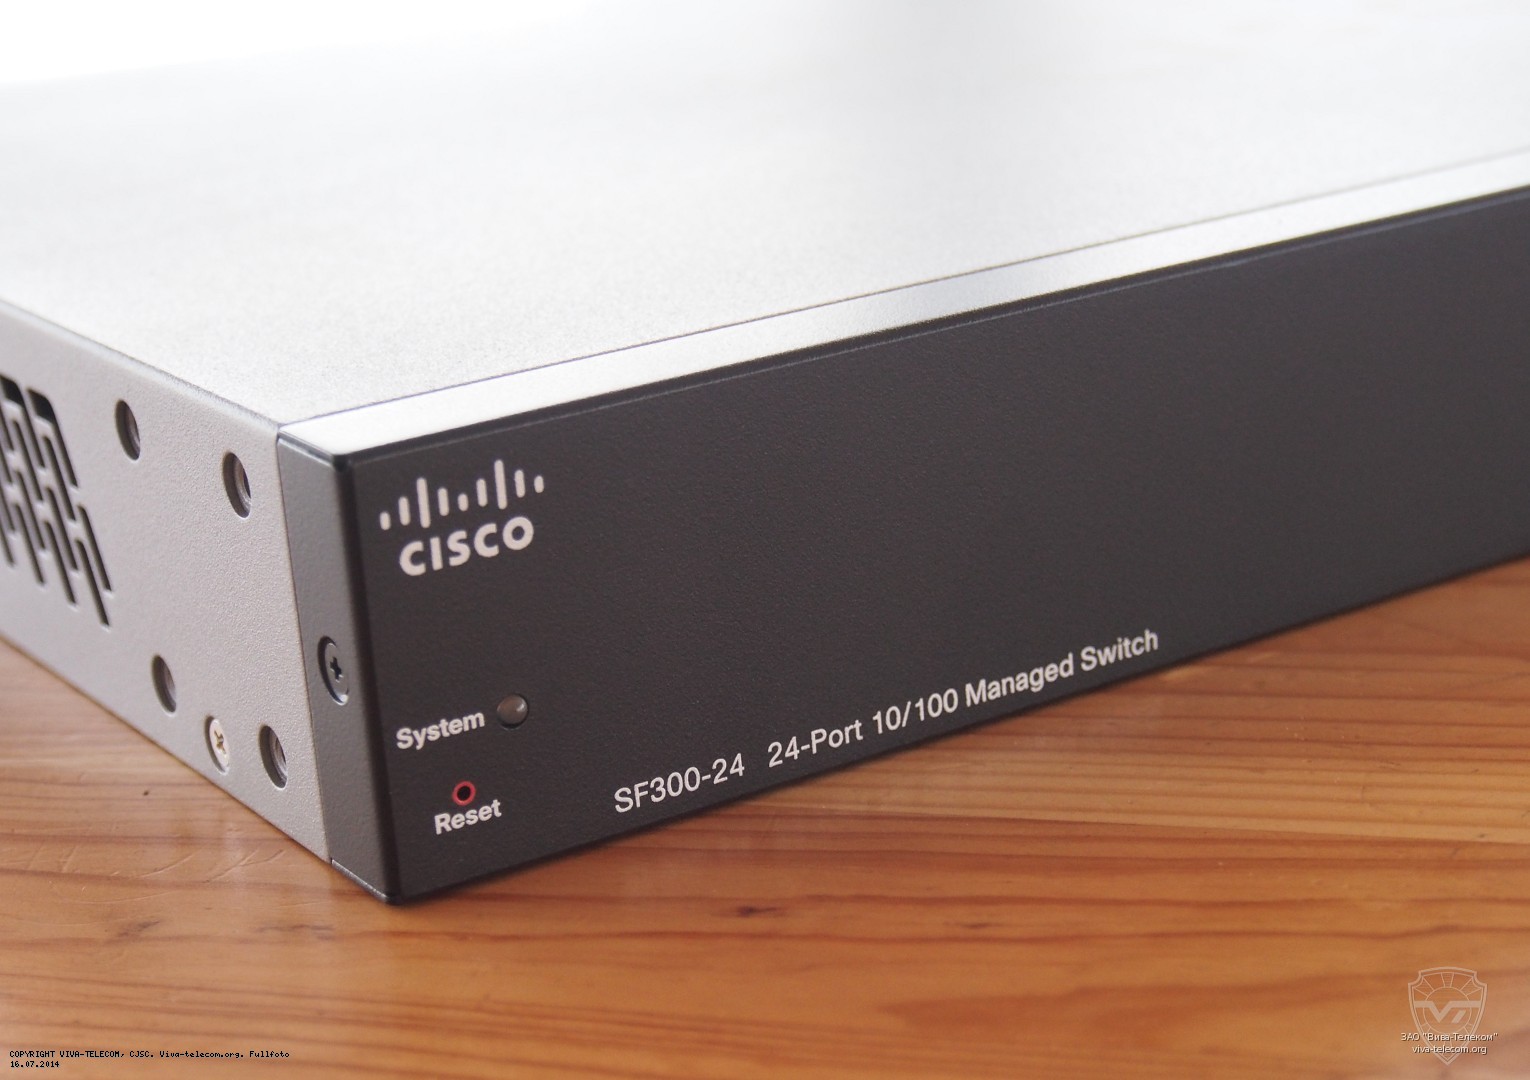      Cisco SF300-24